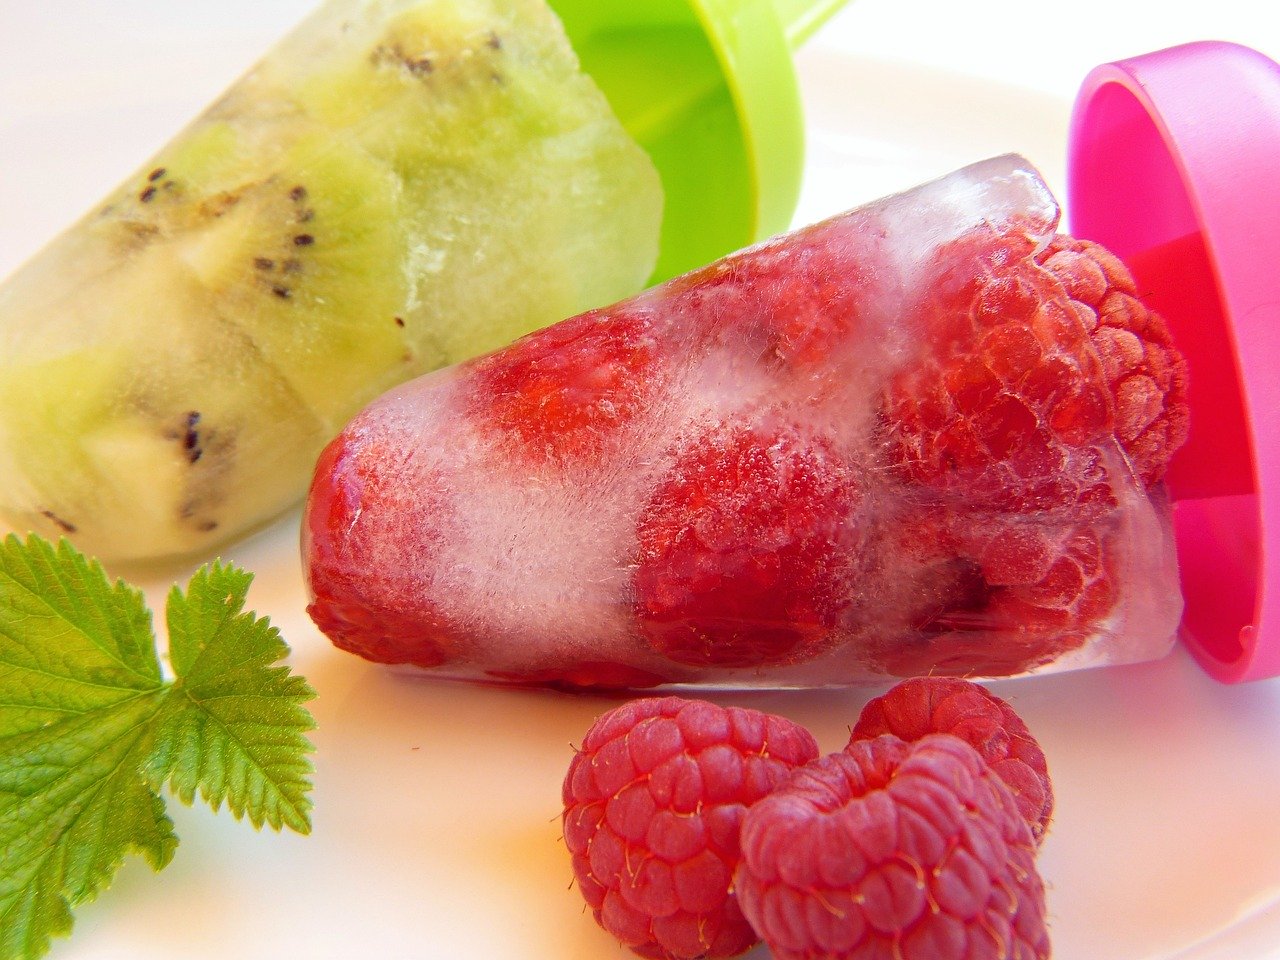 Los helados de frutas son más saludables porque tienen fructuosa, azúcar natural. (Foto Prensa Libre: Pixabay).